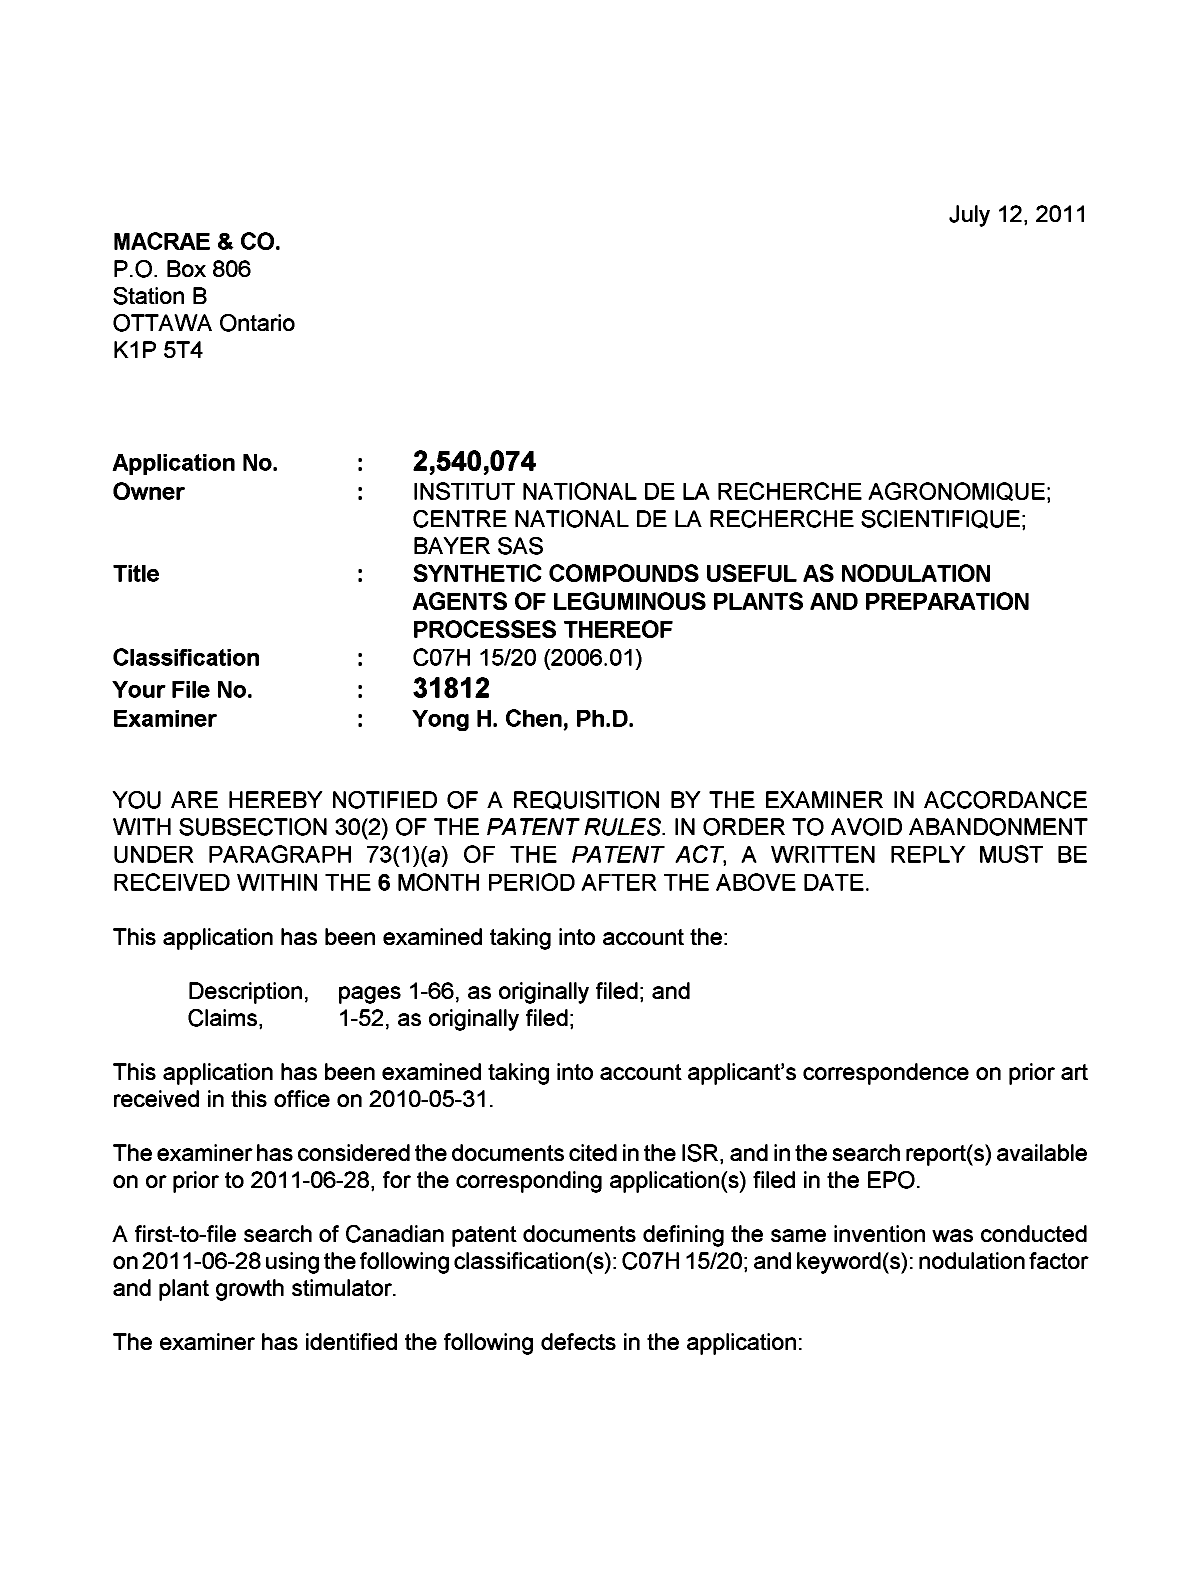 Document de brevet canadien 2540074. Poursuite-Amendment 20110712. Image 1 de 2